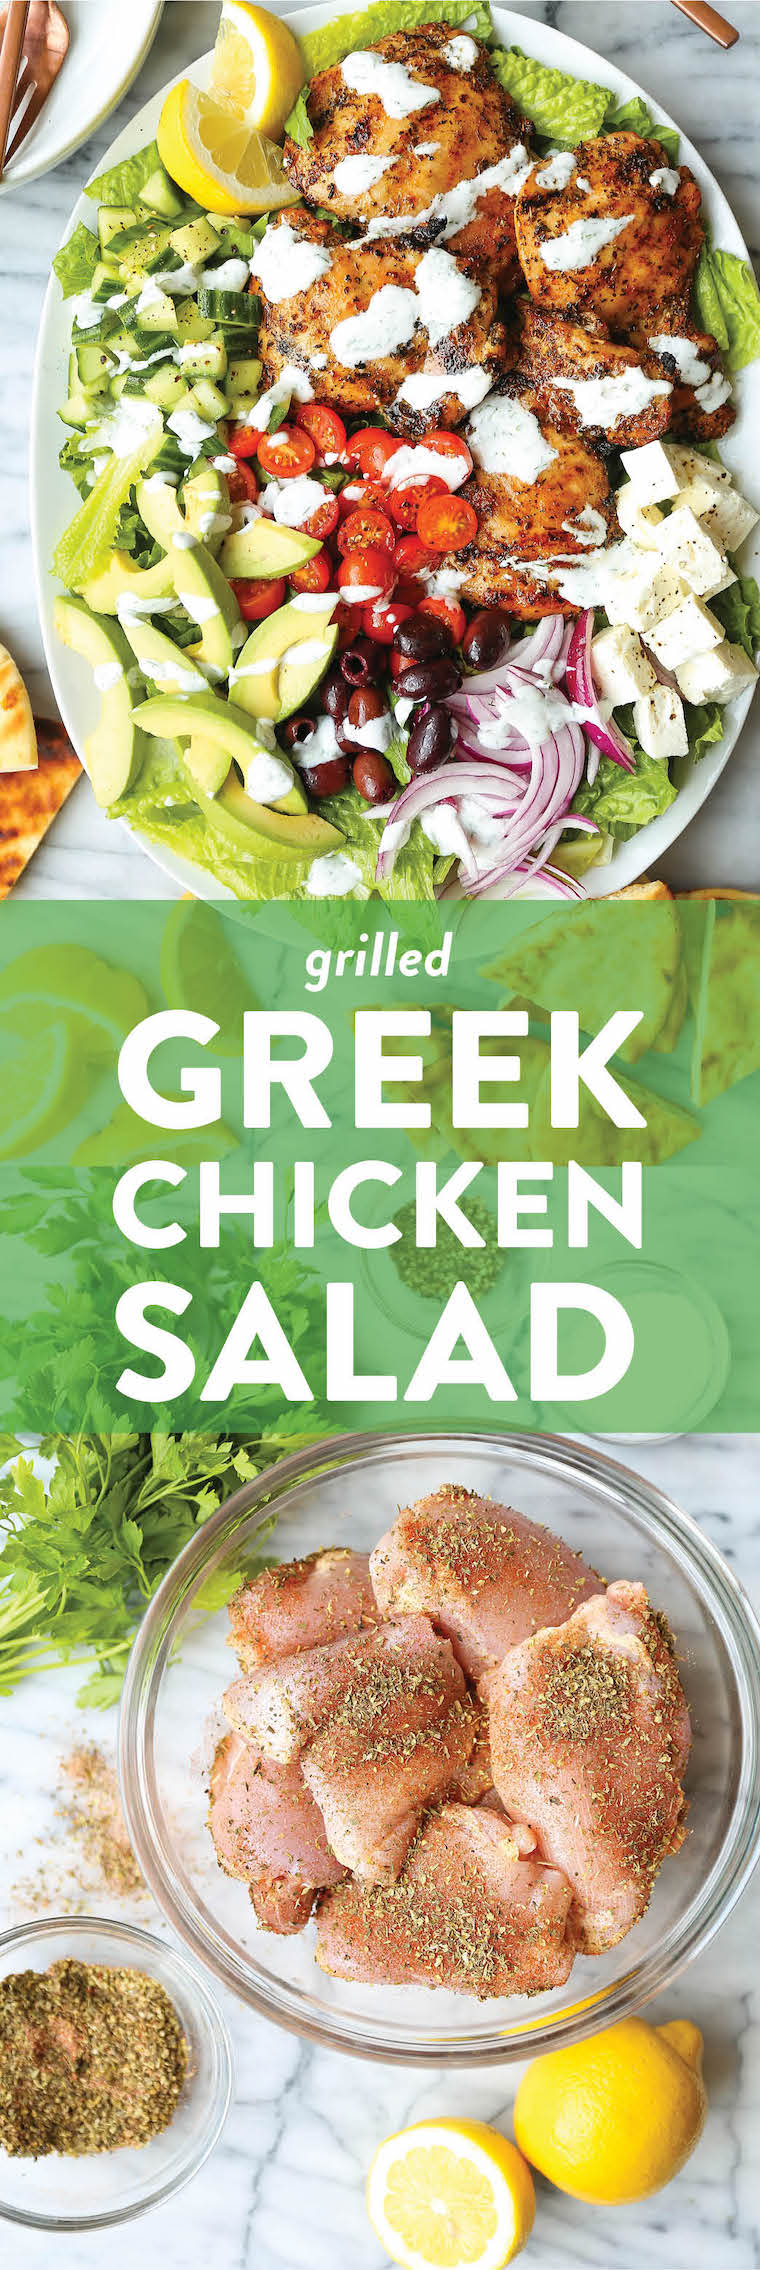 Grilled Greek Chicken Salad Recipe